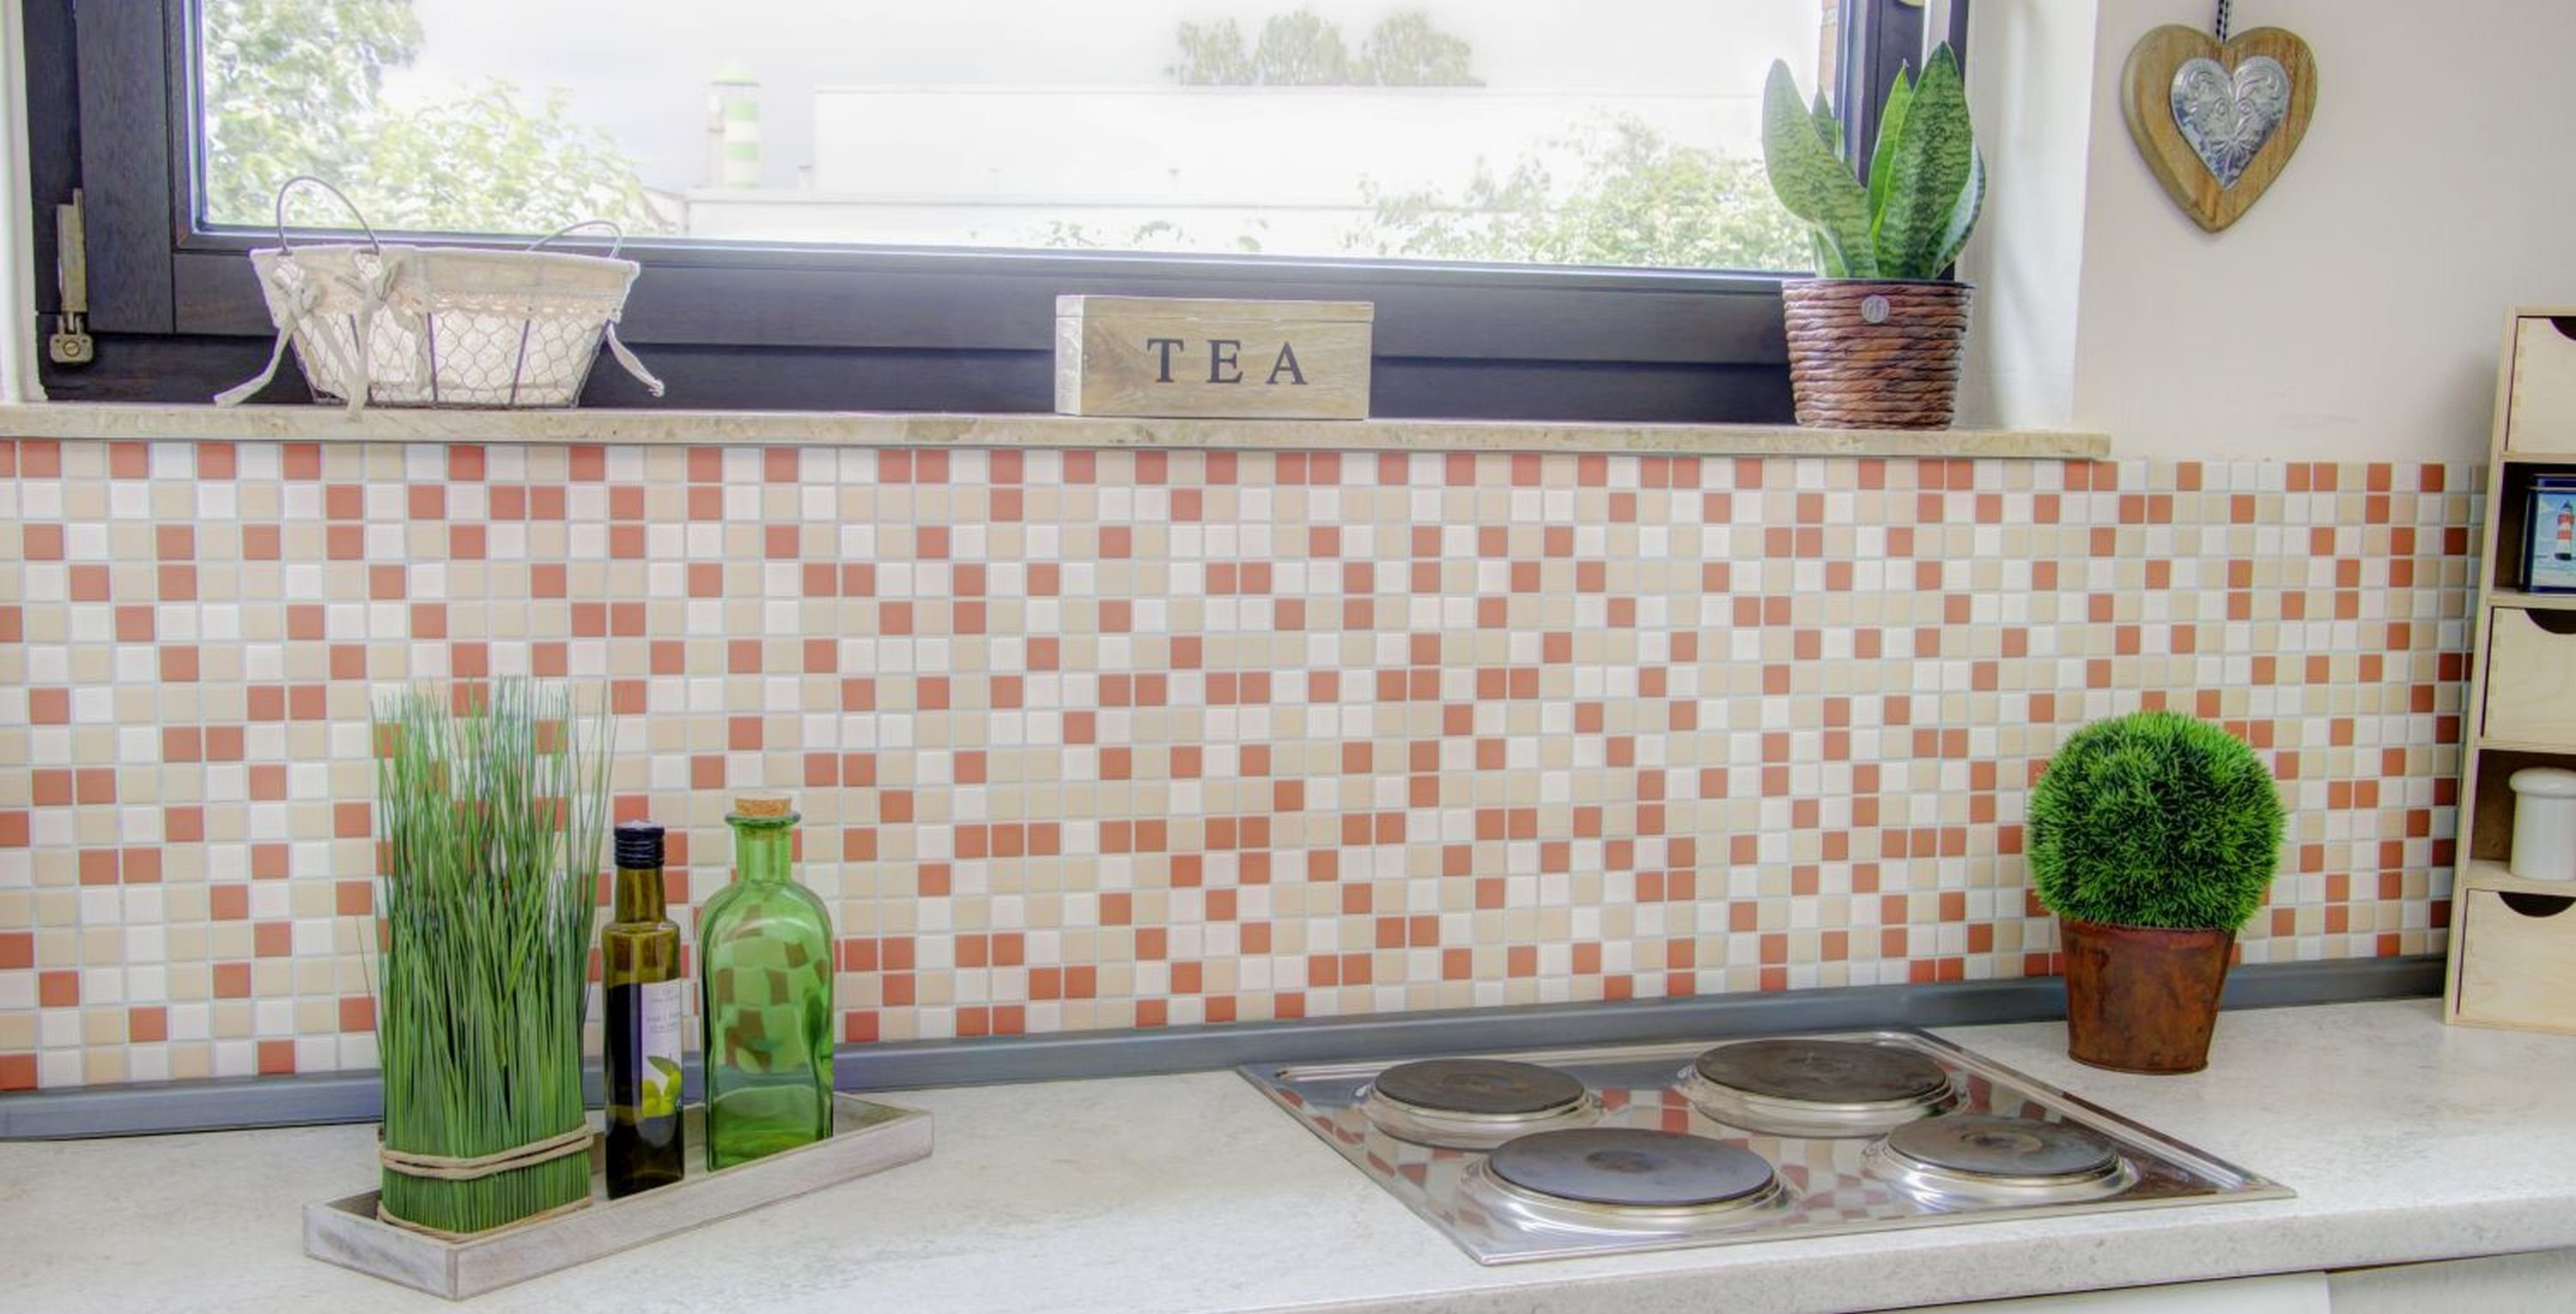 Mosani Mosaikfliesen Fliese terracotta Mosaik matt creme Küche Keramik Fliesenspiegel weiß